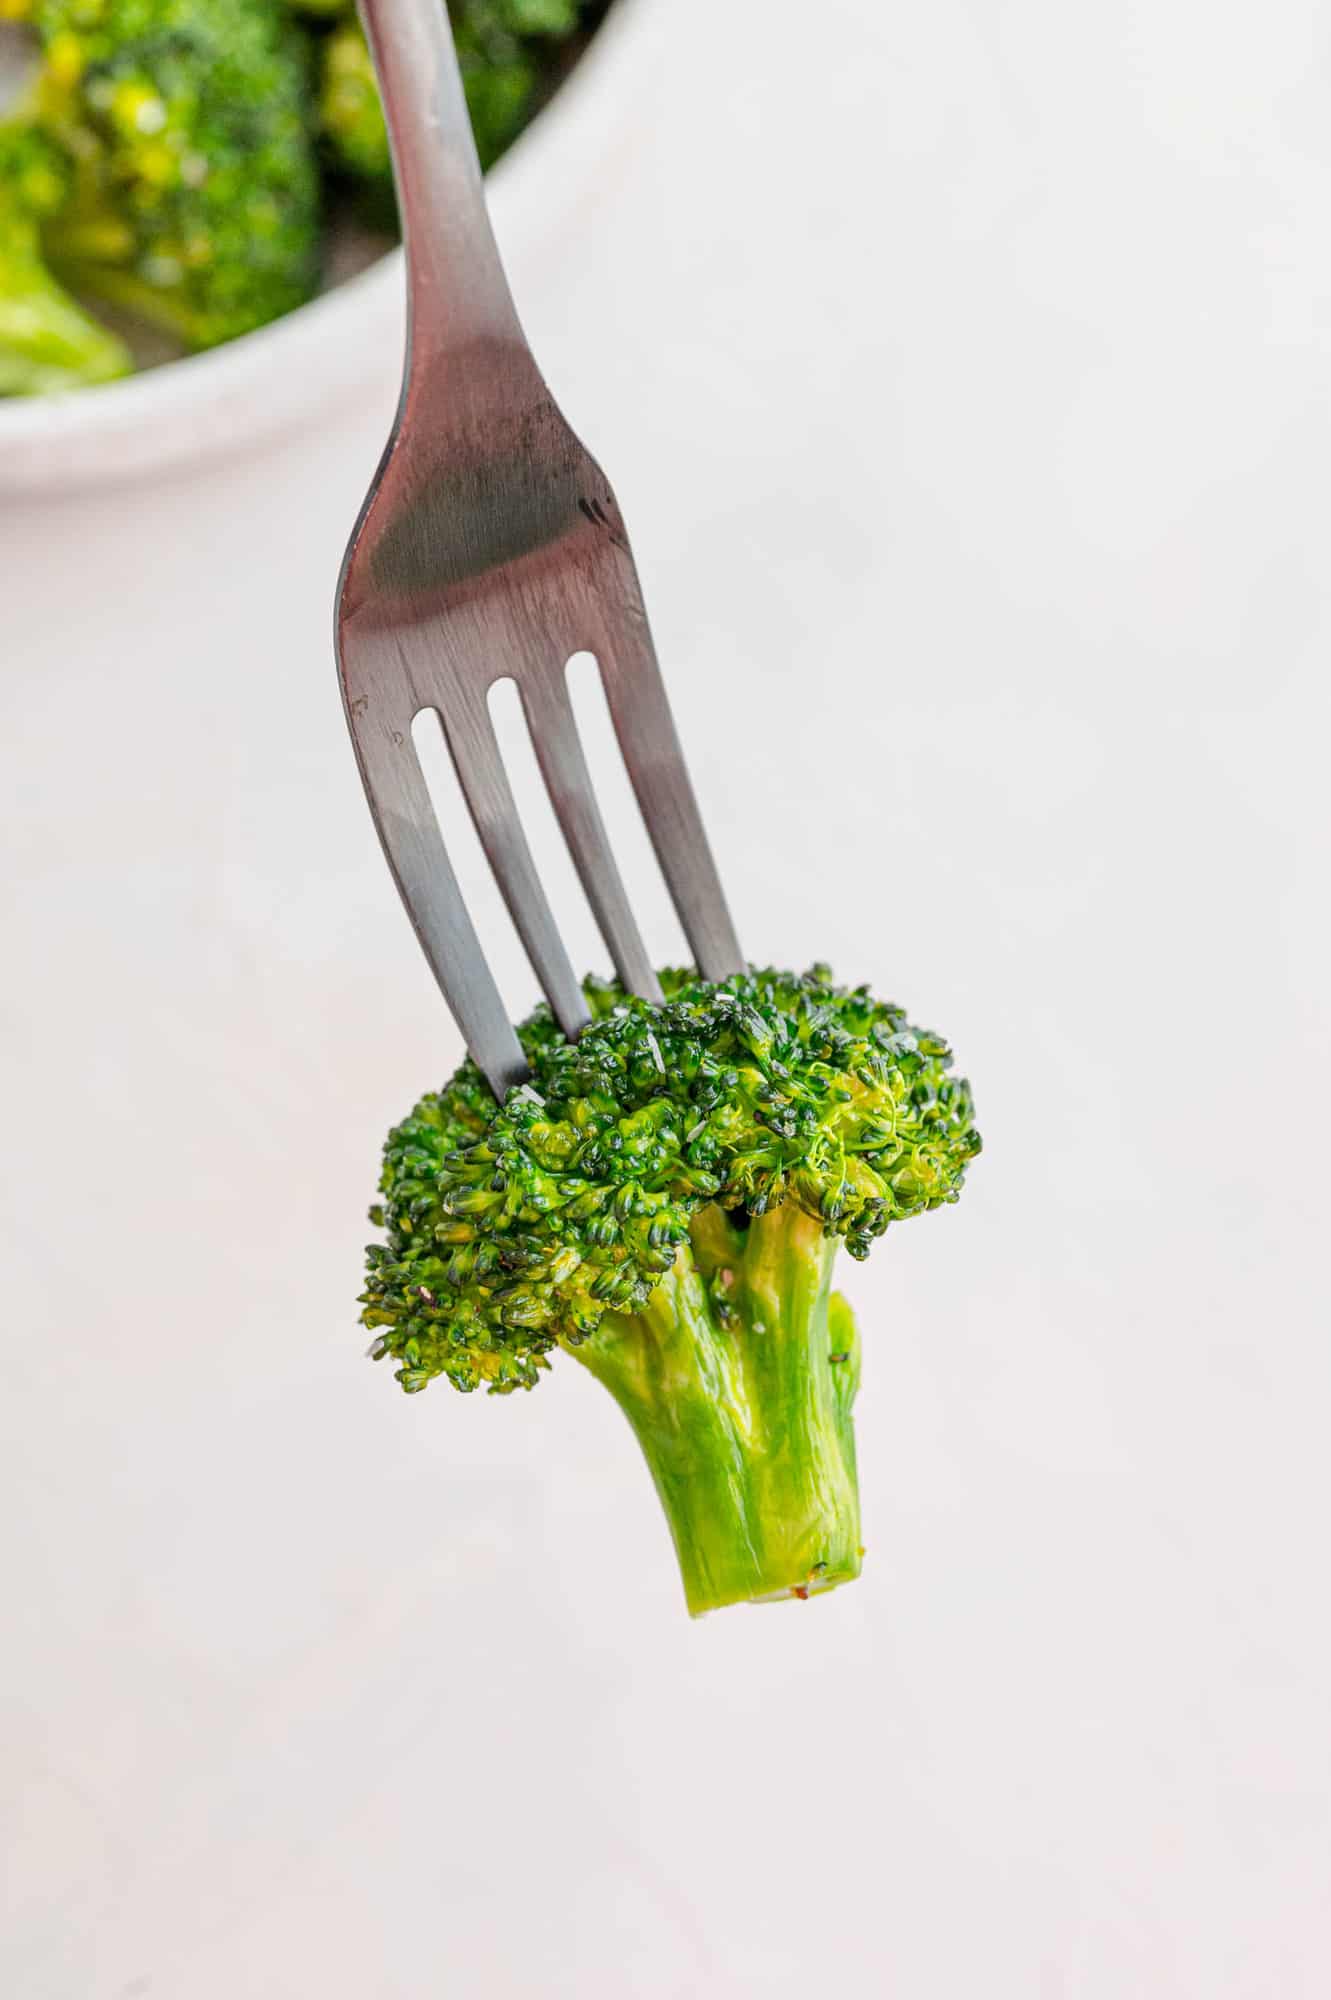 Broccoli on a fork.